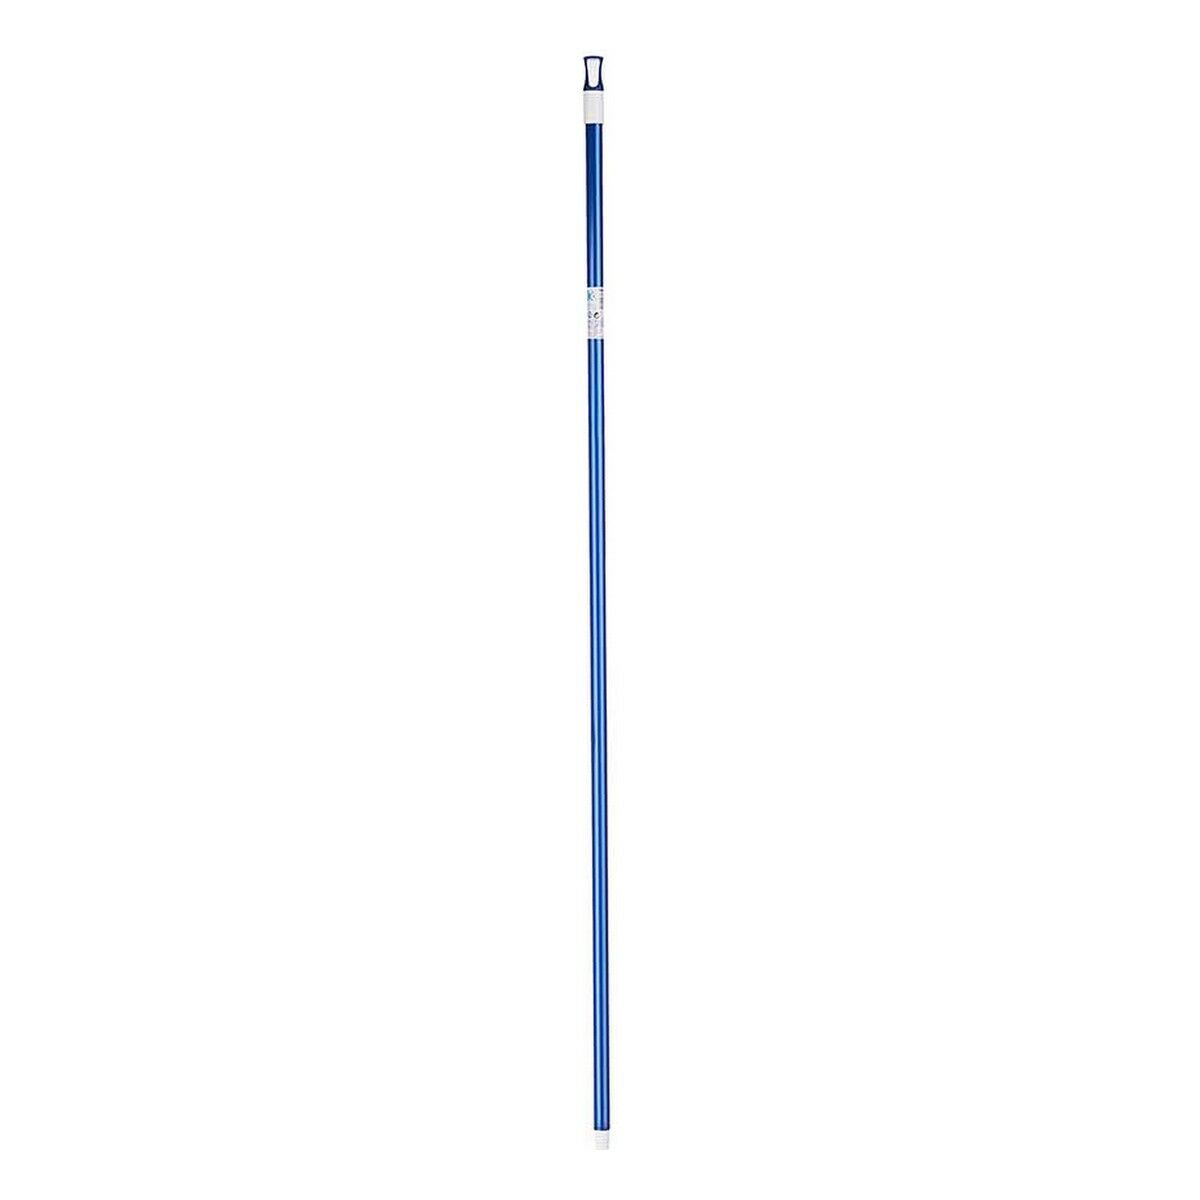 Mazza per la Scopa 2,3 x 130 x 2,3 cm Azzurro Metallo (12 Unità)